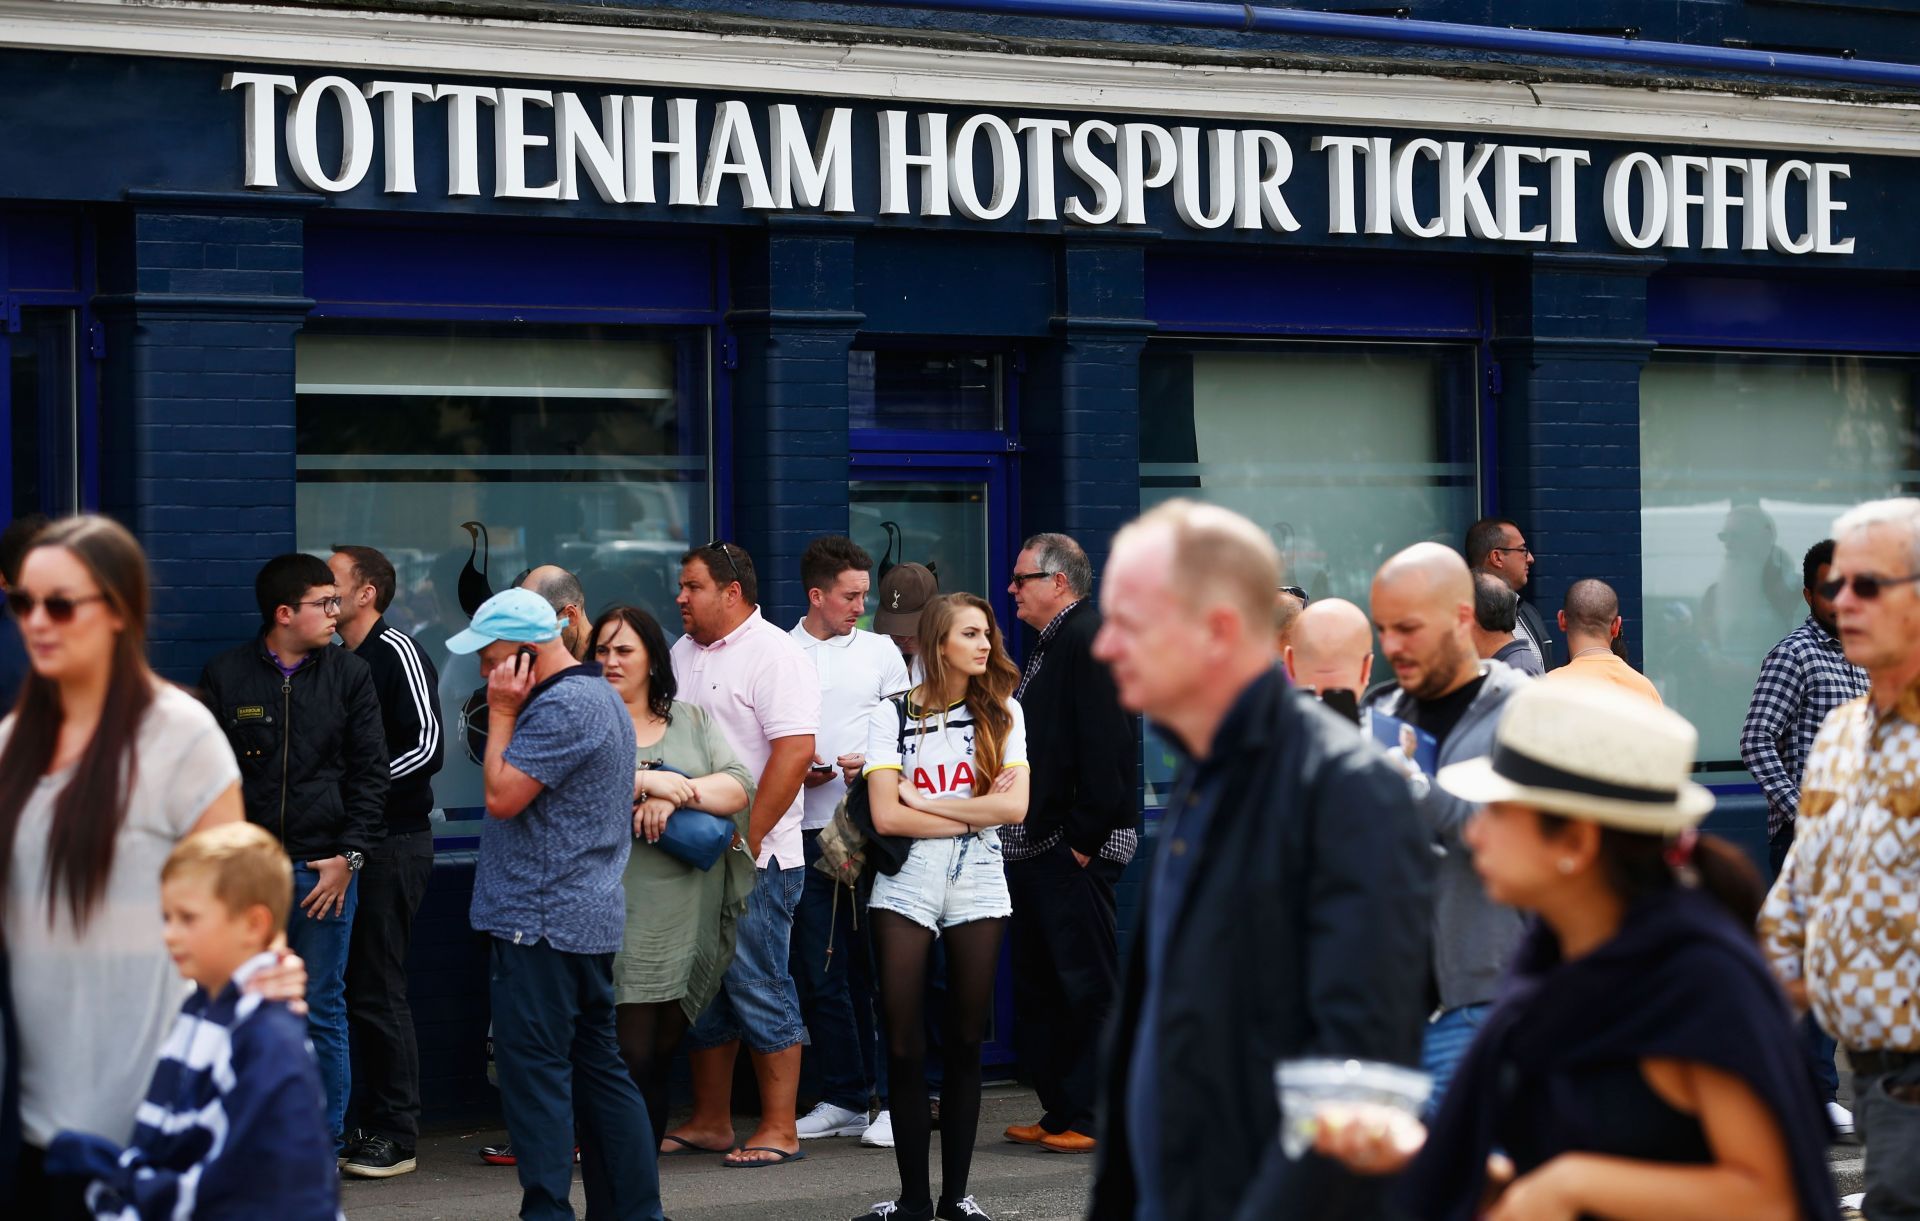 Tottenham Hotspur ticket office.